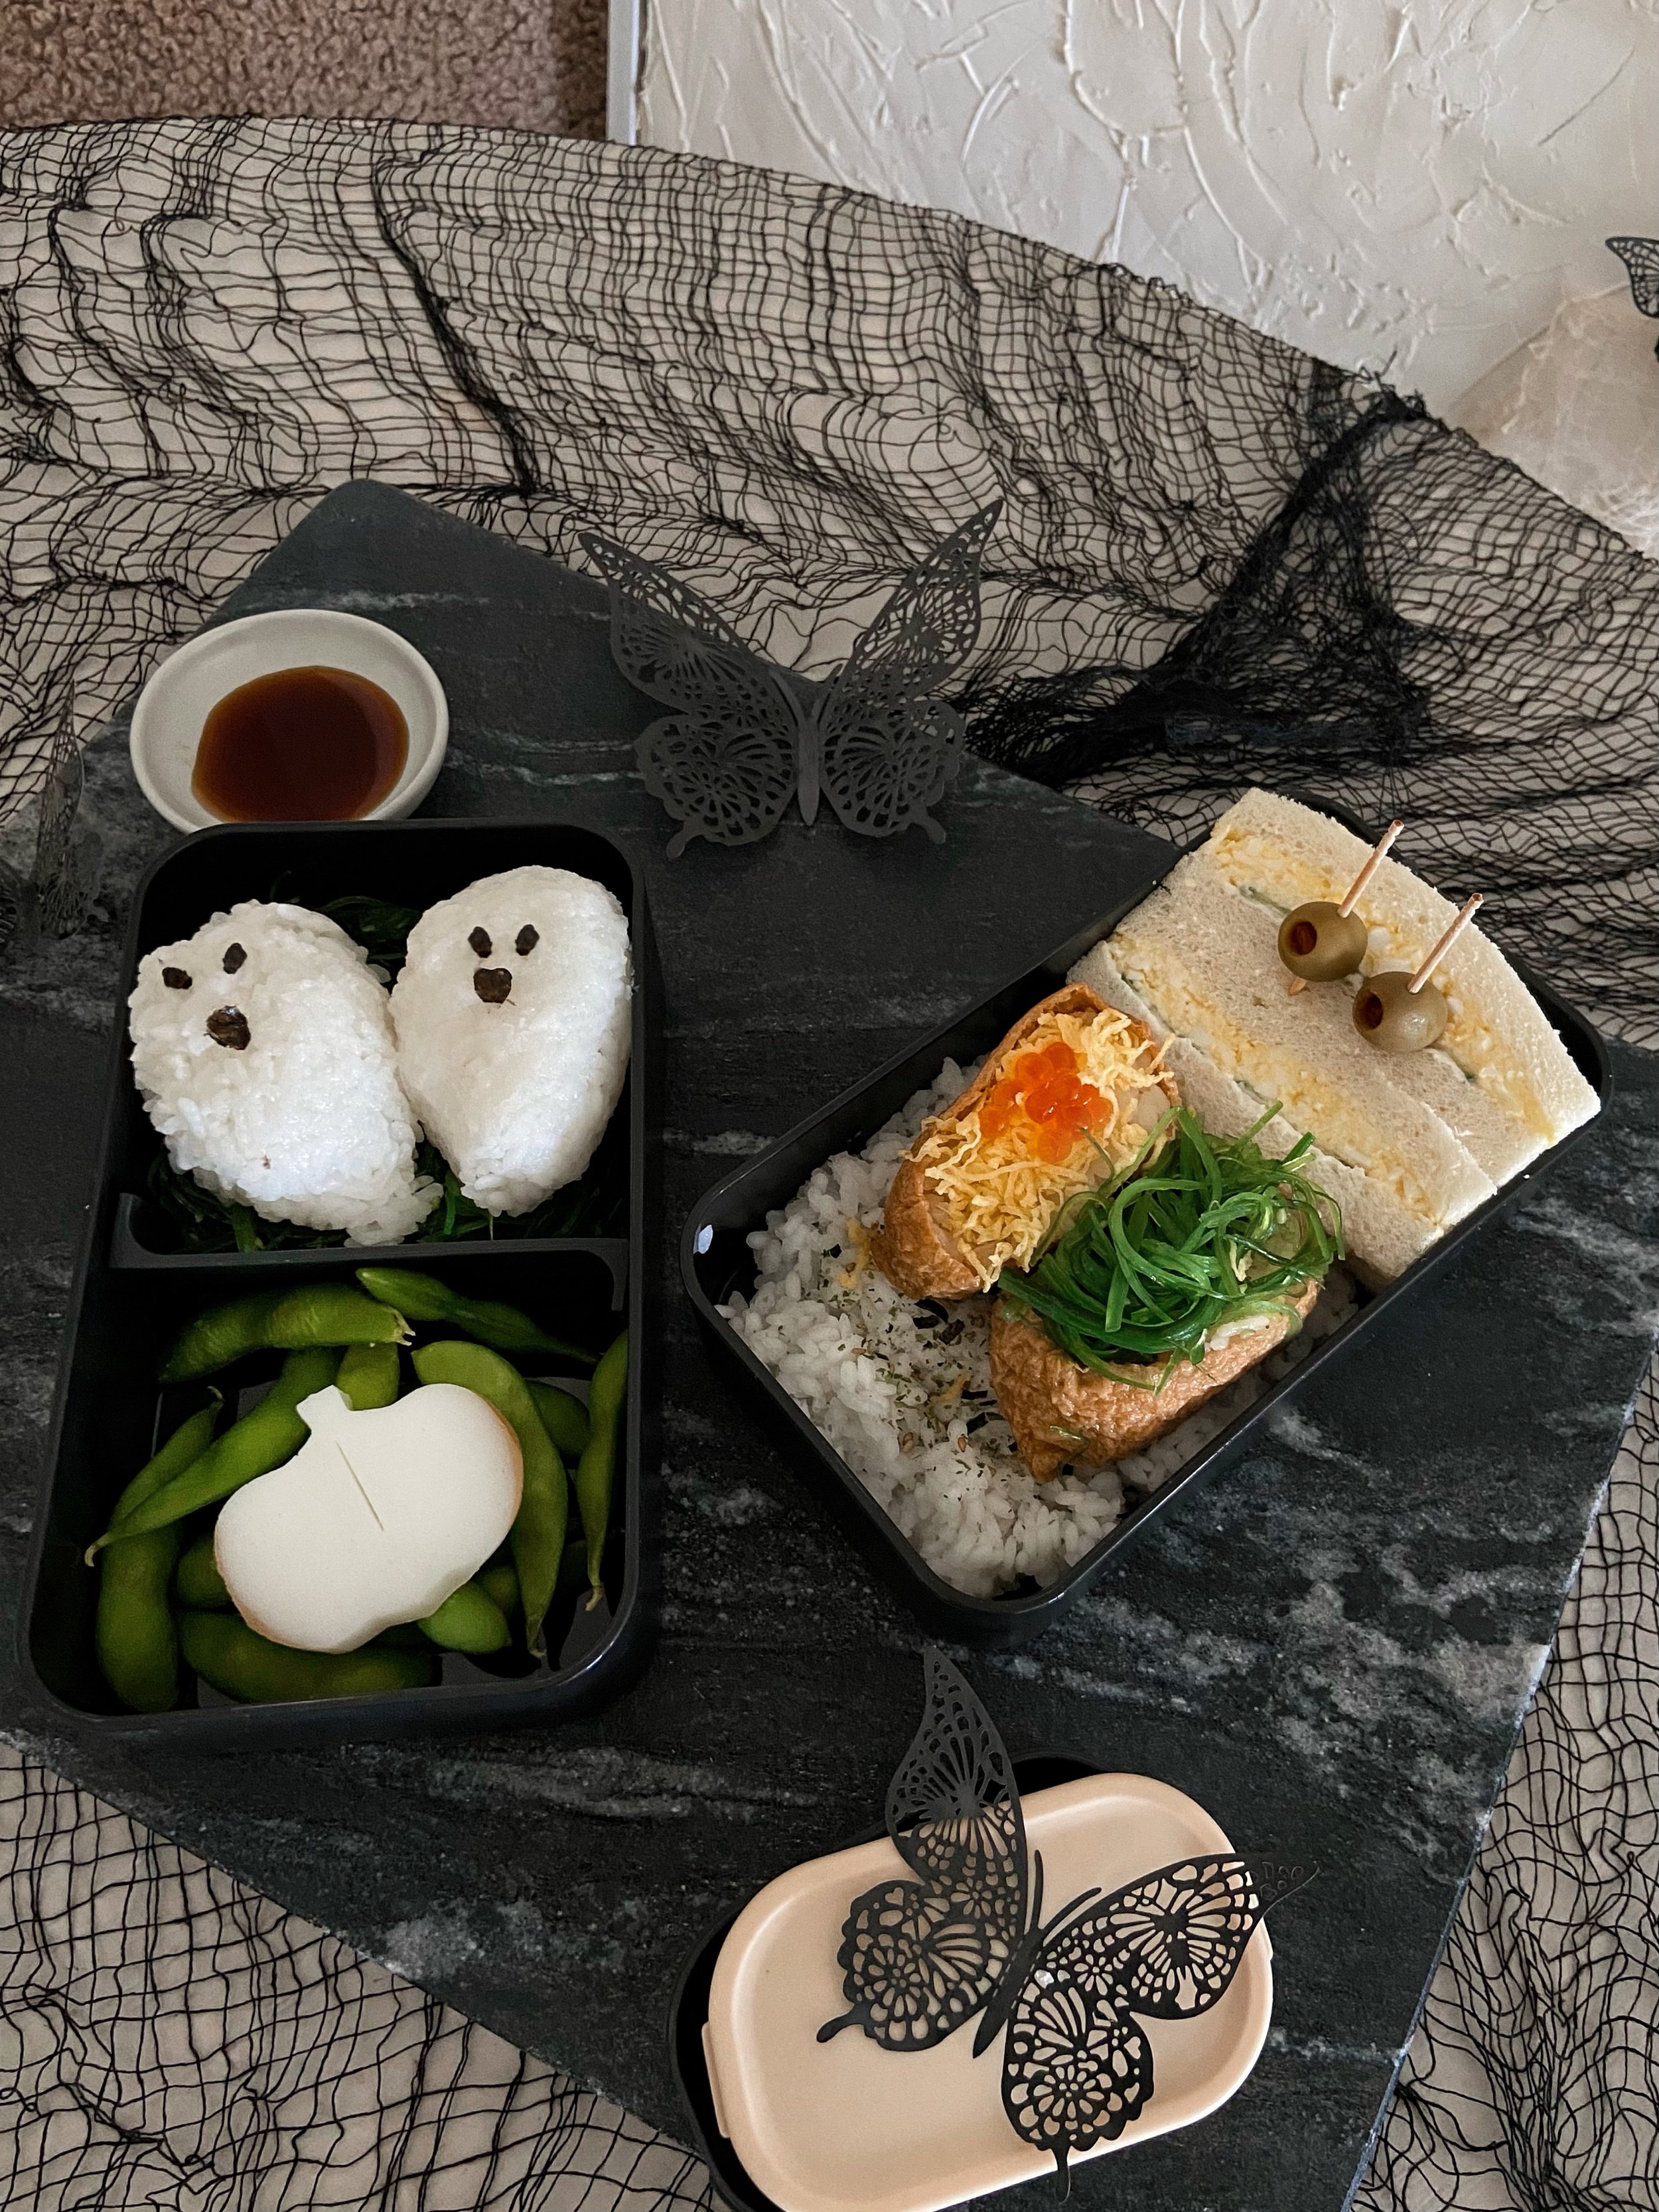 19 Bento Box Lunch Ideas